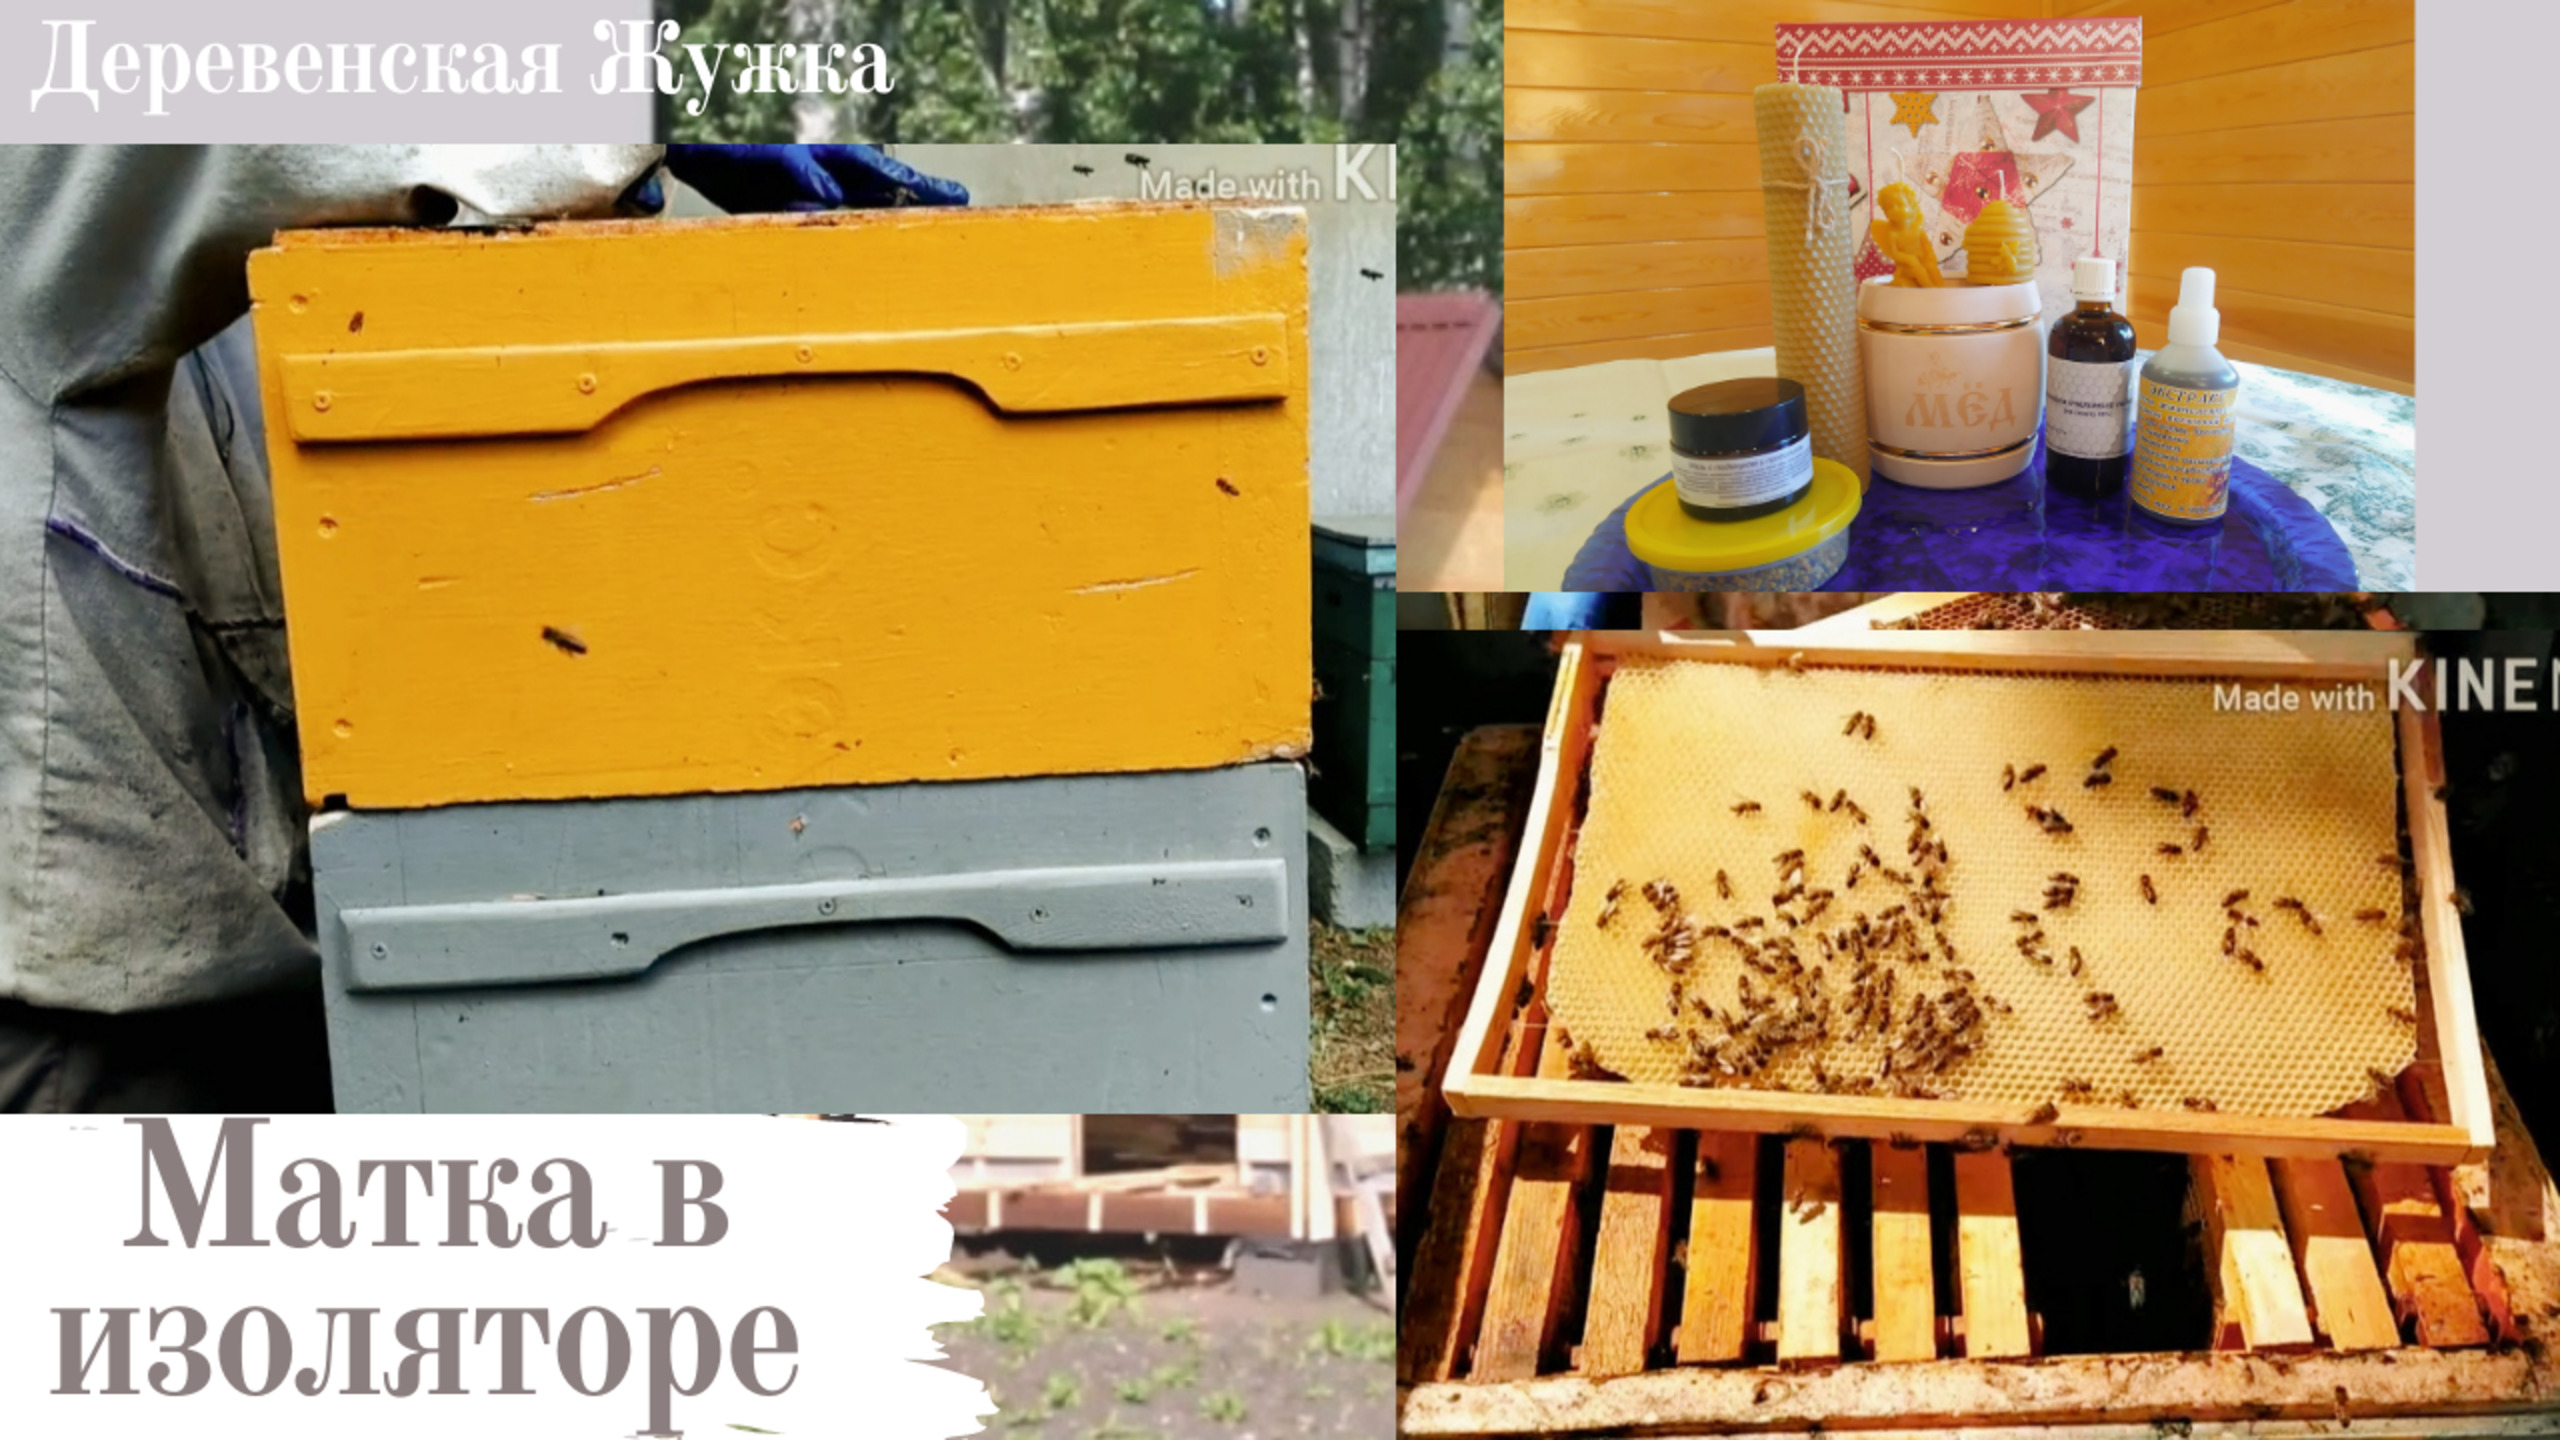 Пчелы. Семья на трех корпусах. Матка в изоляторе Часть 2 (Bee.)